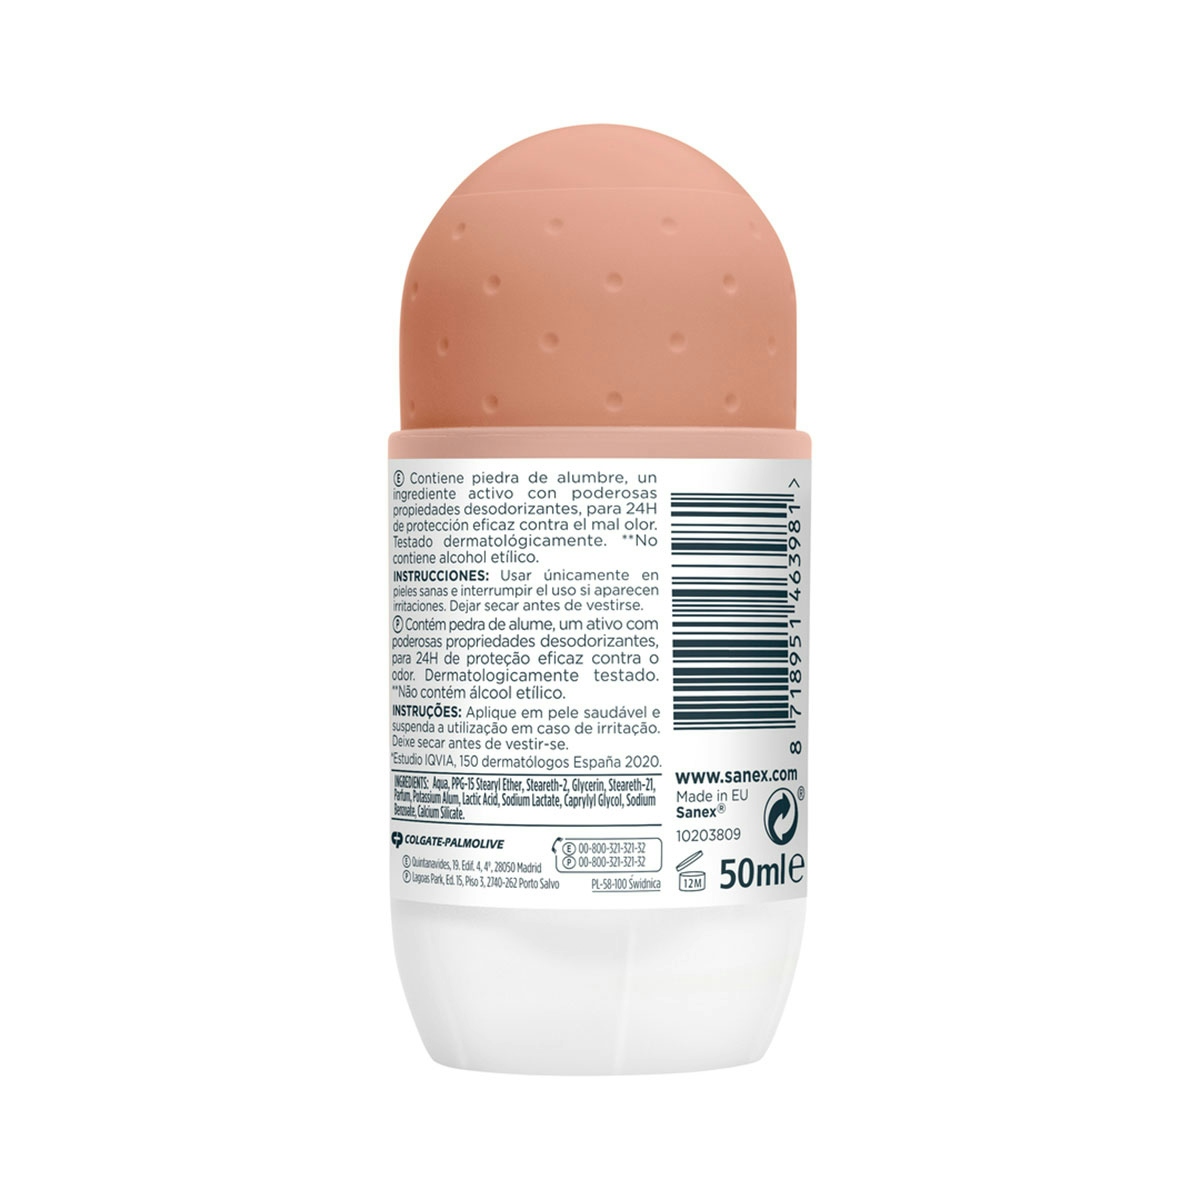 Desodorante roll-on Sanex Natur Protect piel sensible 24h con piedra de alumbre 50ml